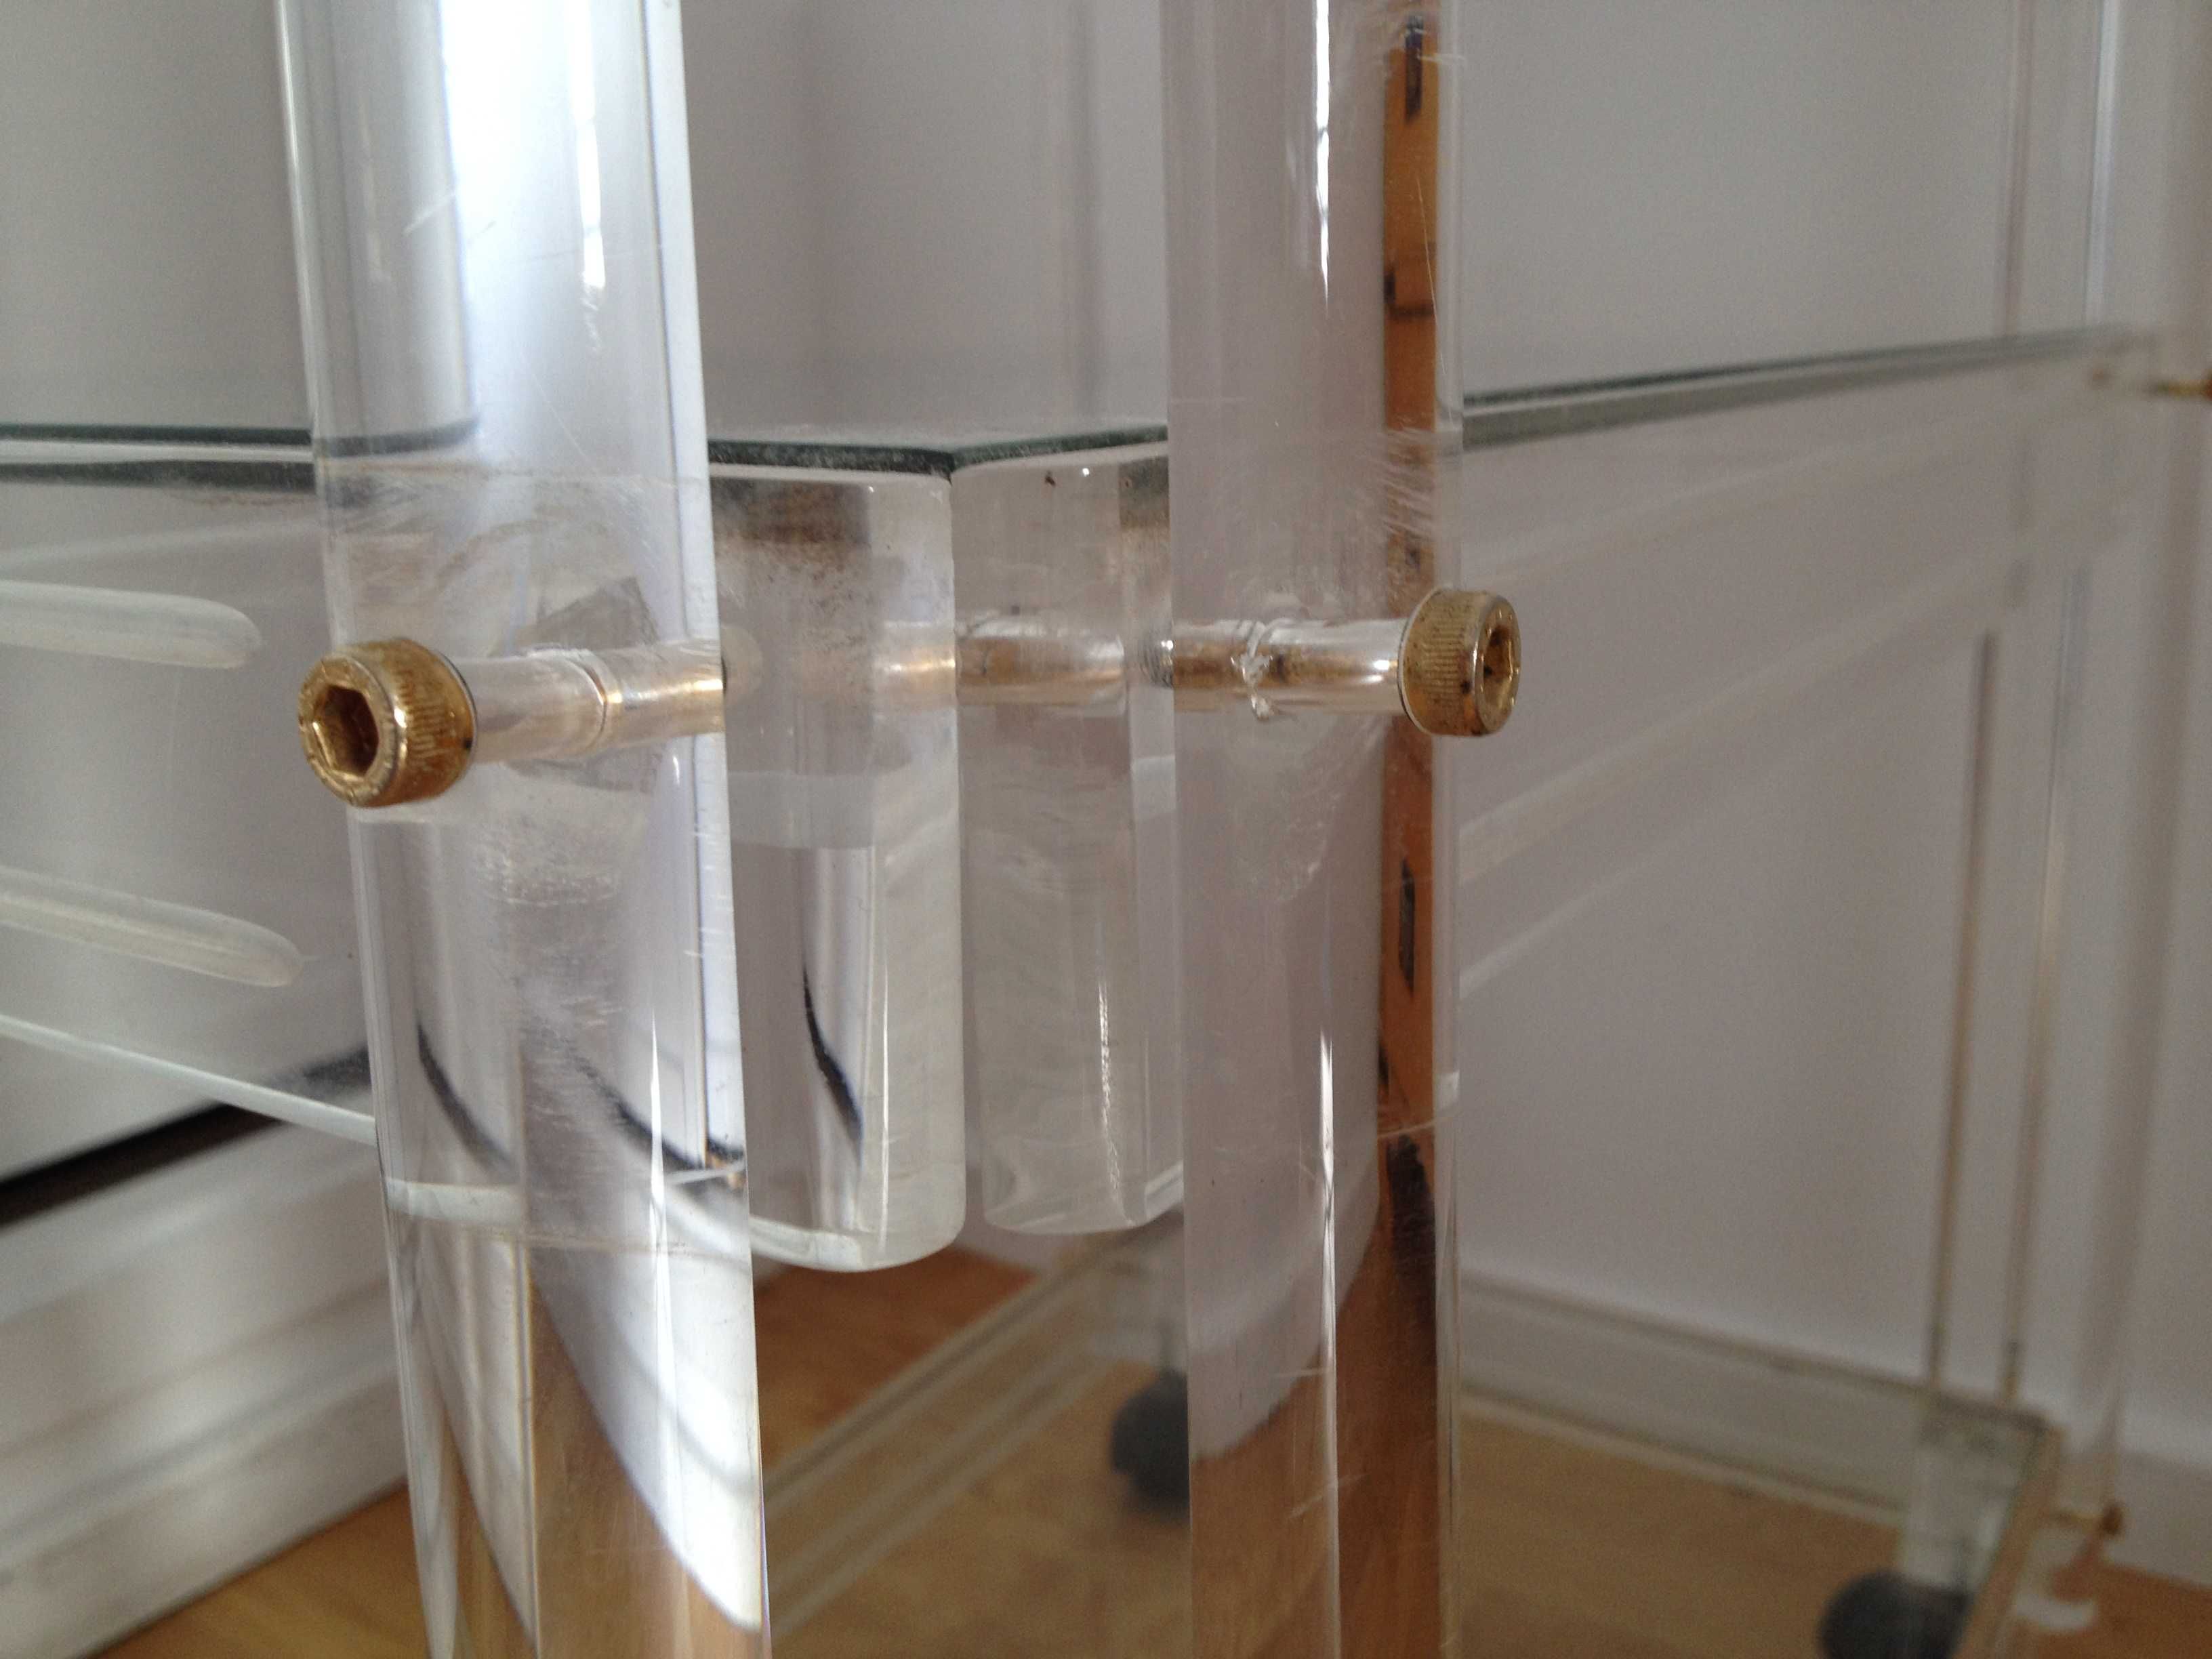 Carrinho trolley transparente em acrílico e vidro